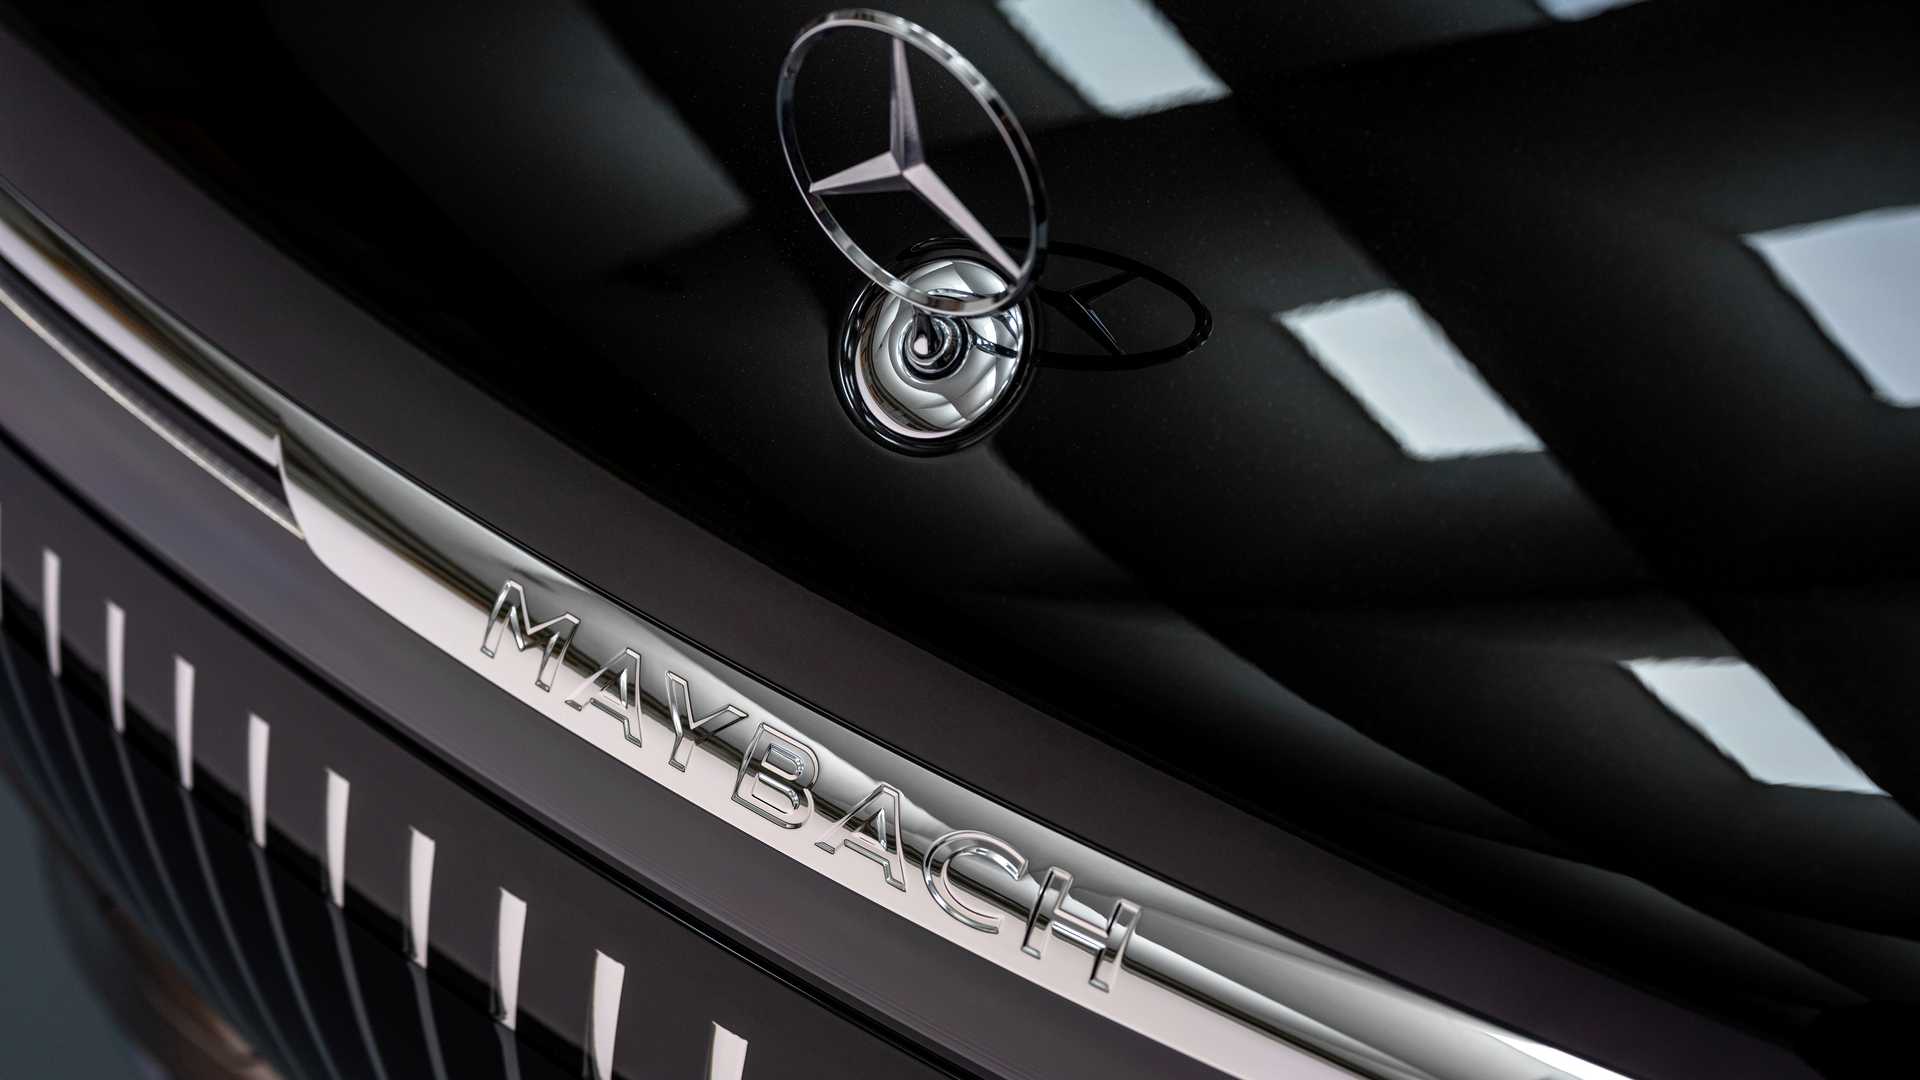 2024 Mercedes-Maybach EQS SUV